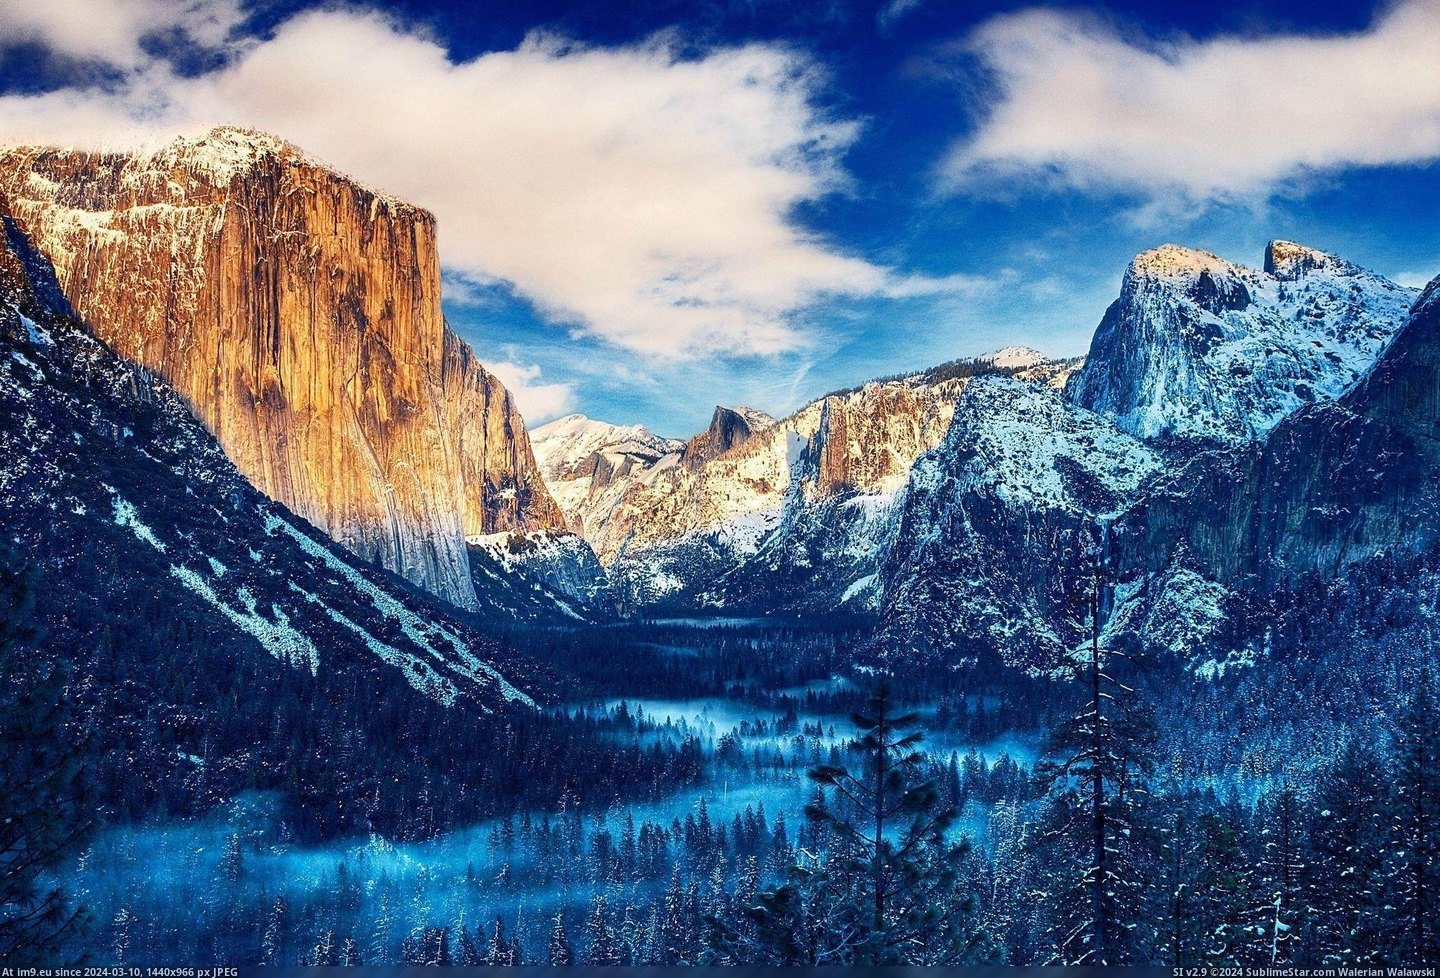 #Valley #4051x2742 #Yosemite [Earthporn] Yosemite Valley [4051x2742] Pic. (Bild von album My r/EARTHPORN favs))